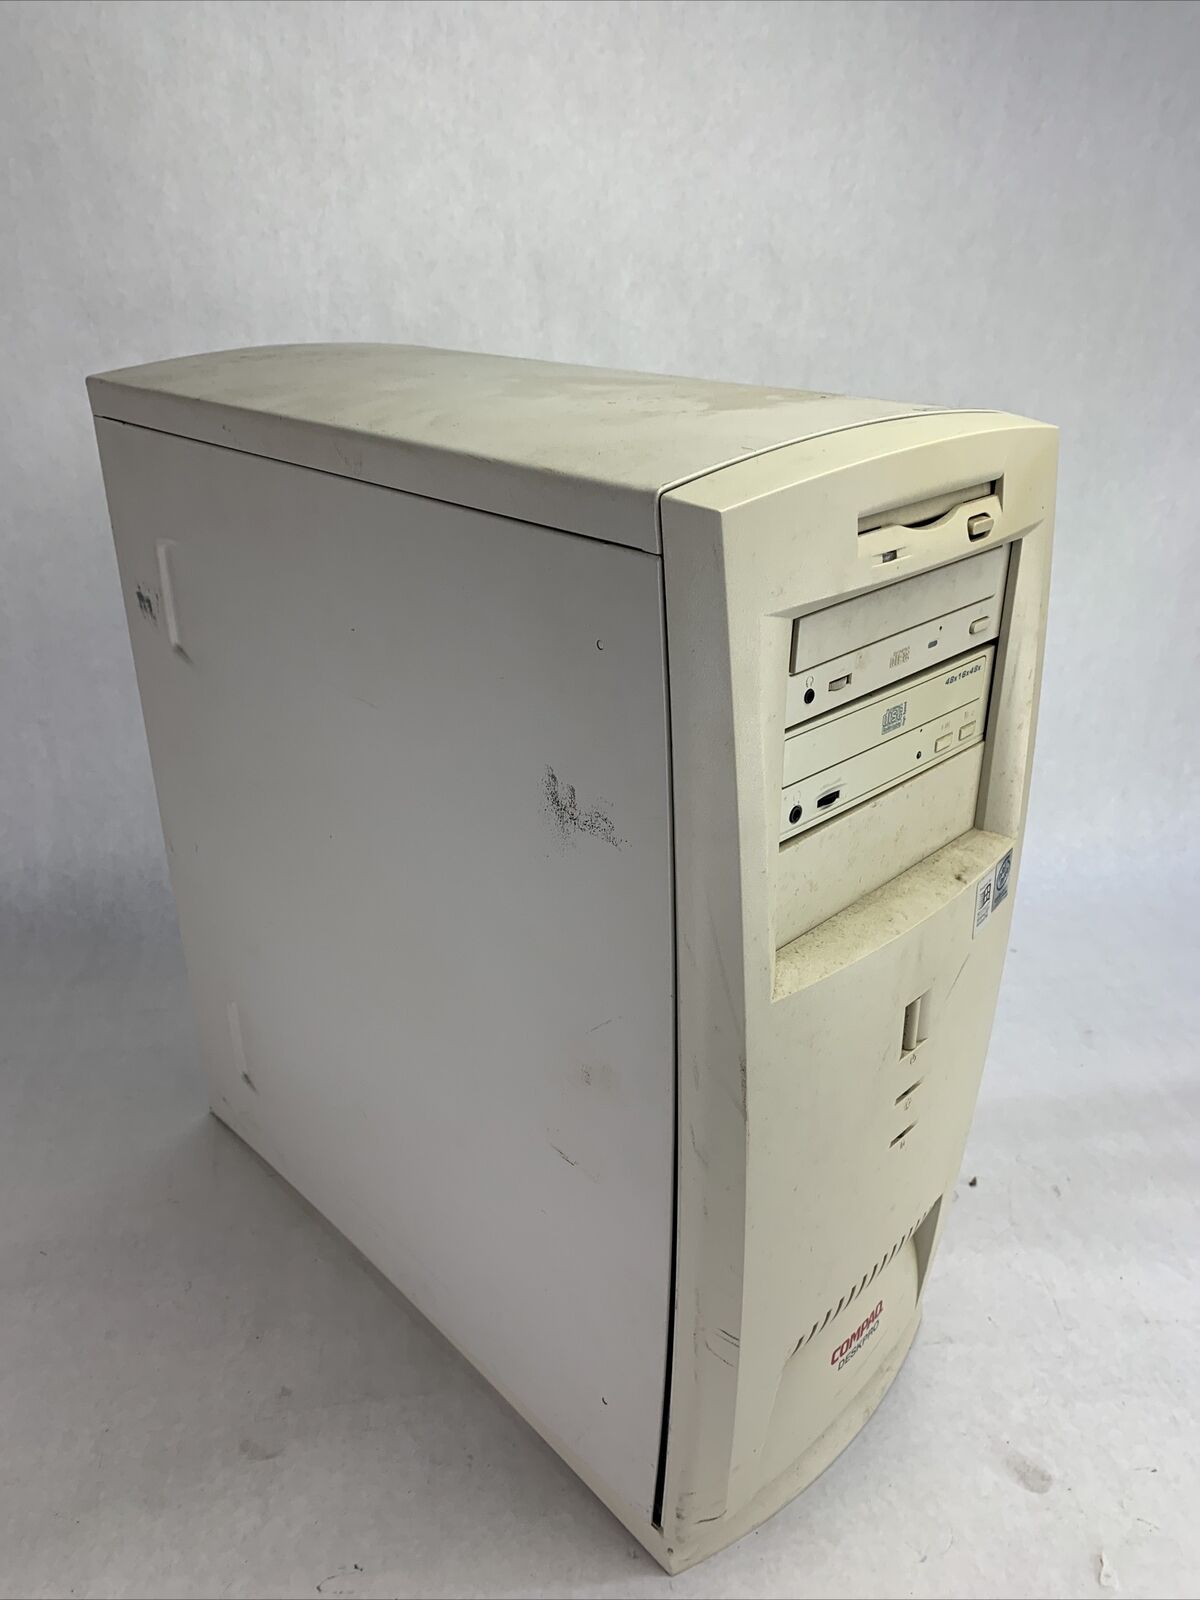 Compaq DeskPro EN C333 MT Intel Pentium II 450MHz 512MB RAM No HDDNo OS